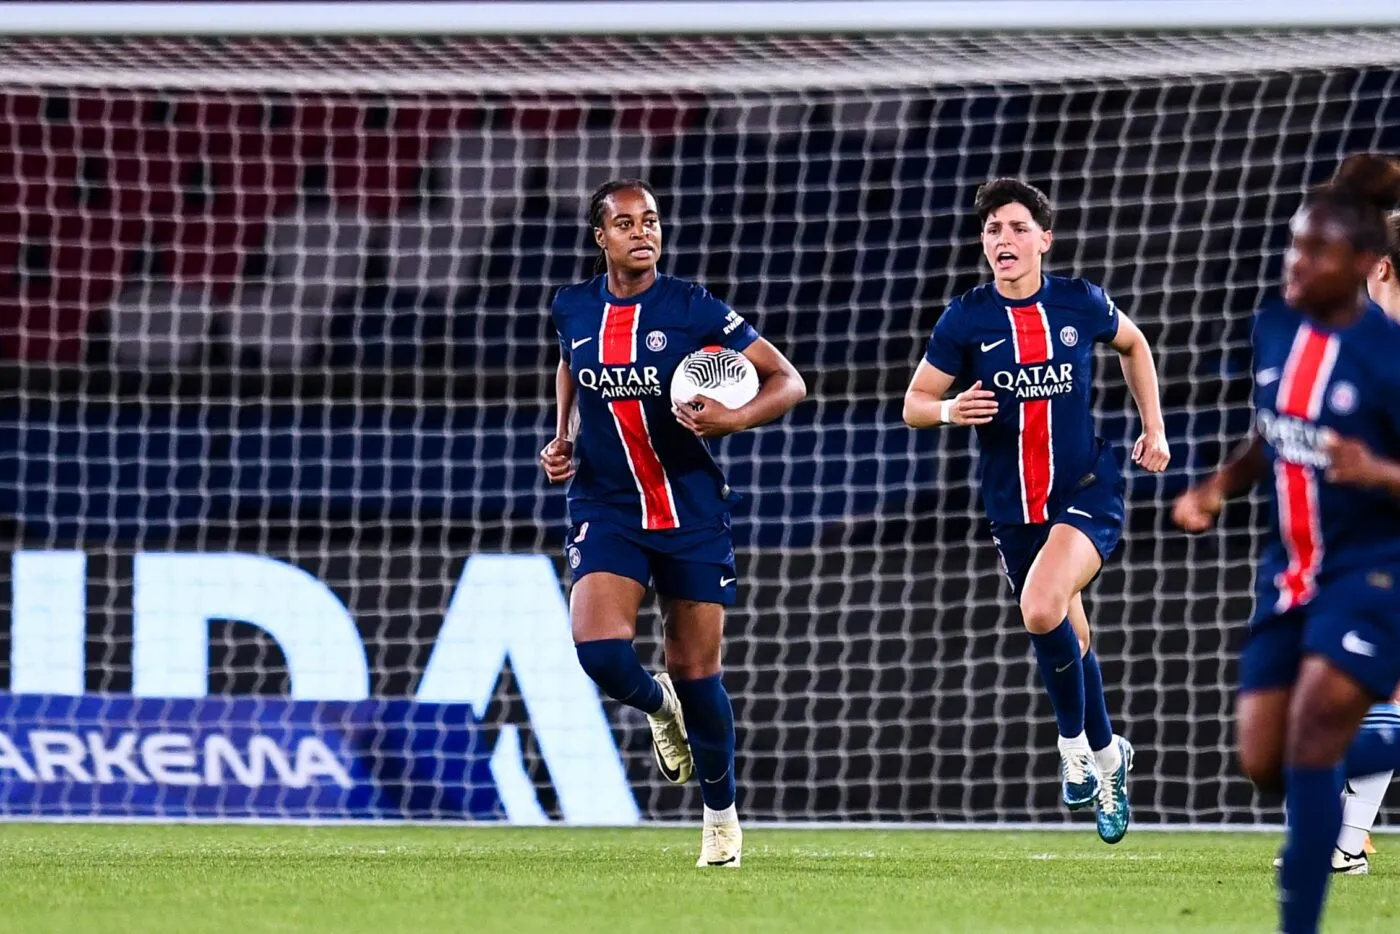 D1 féminine : le PSG premier qualifié pour la finale des playoffs